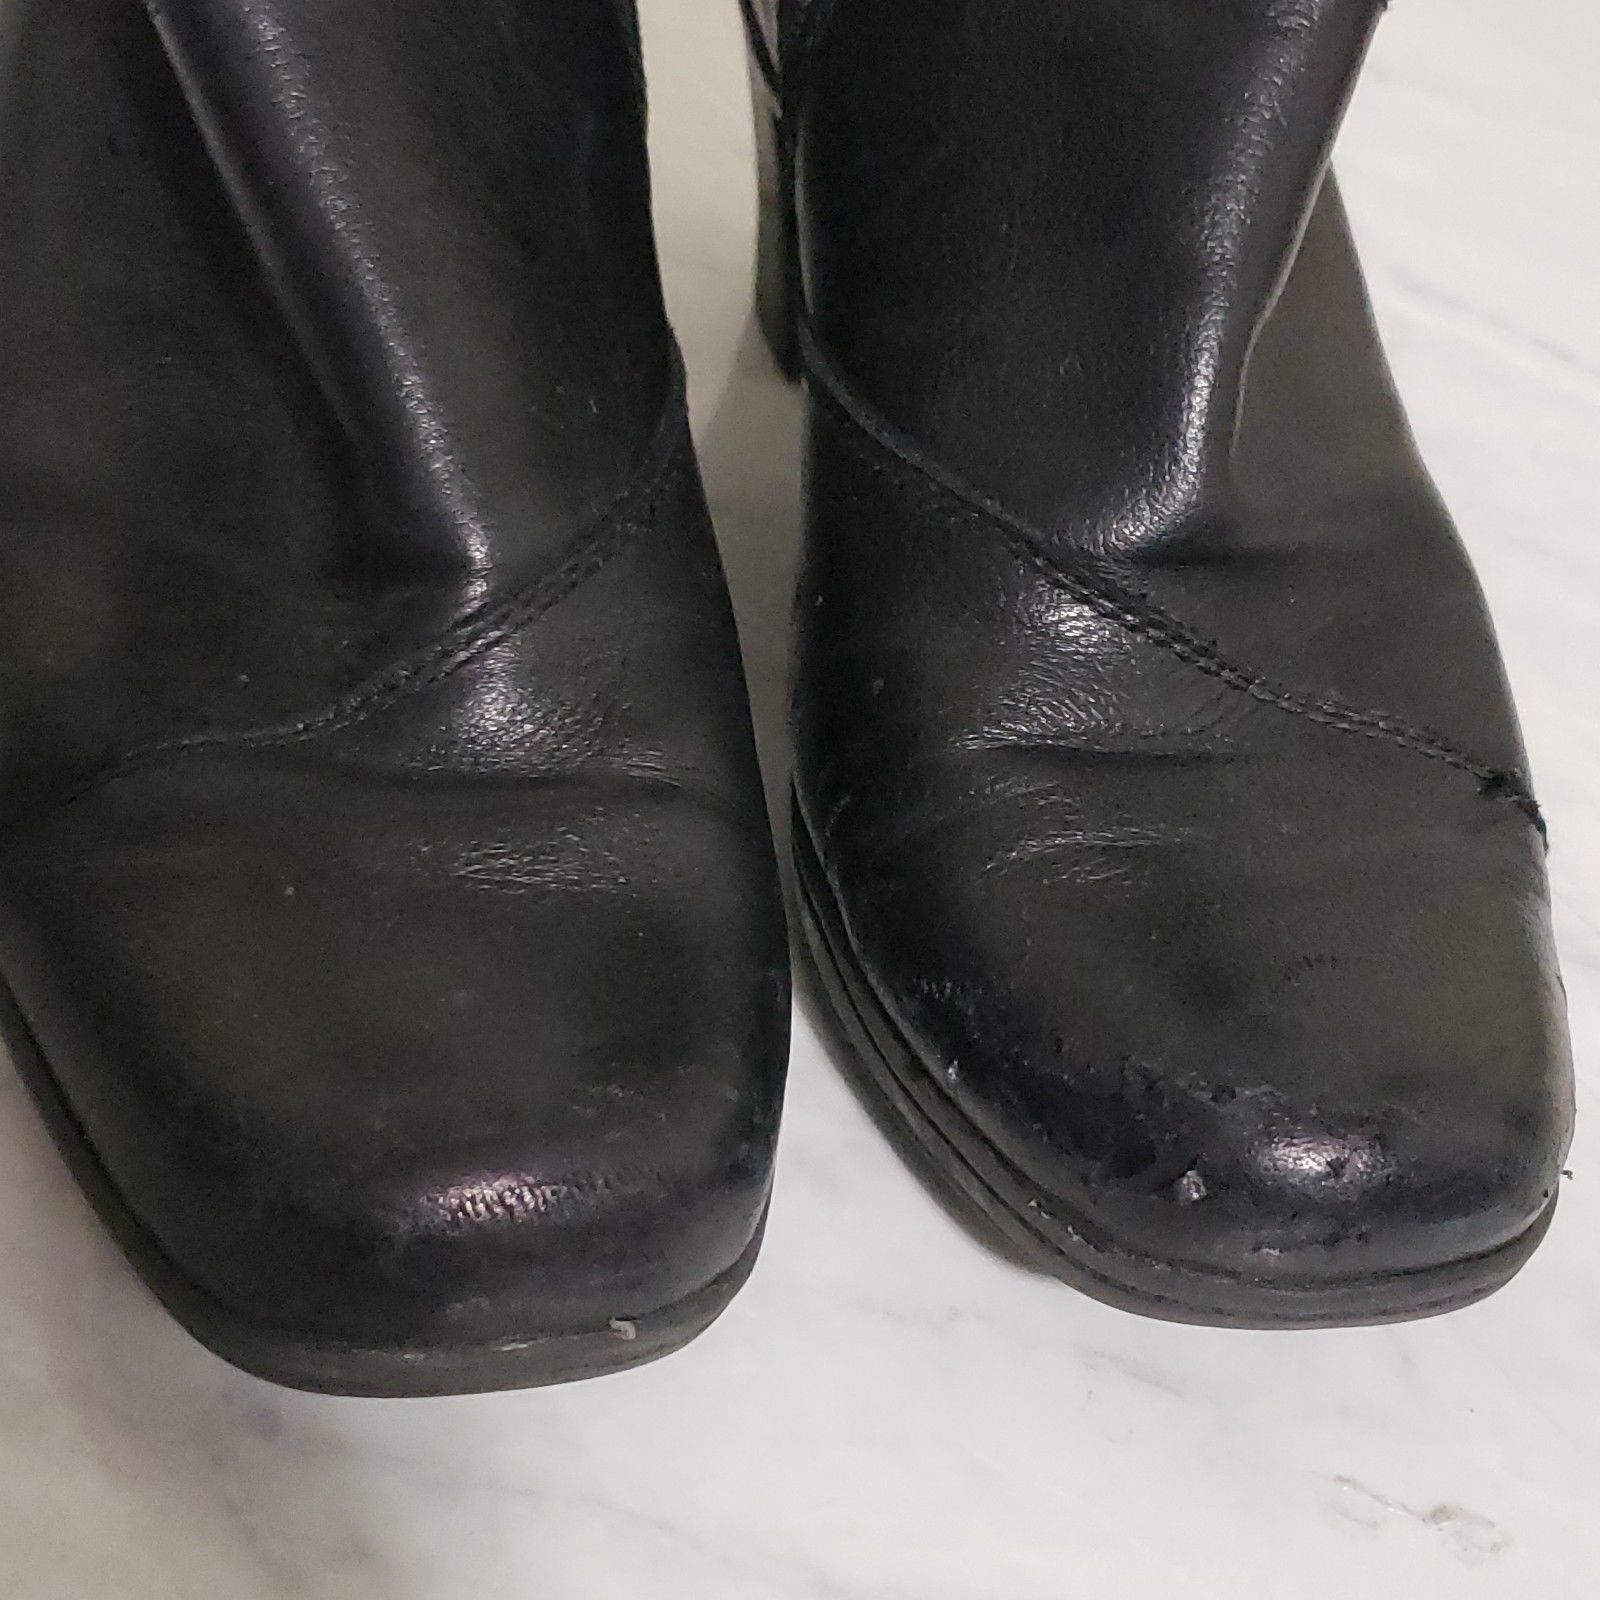 Clarks Women's Black Leather Heel Boots Mid Calf Zip Up Comfort Size 9M ...